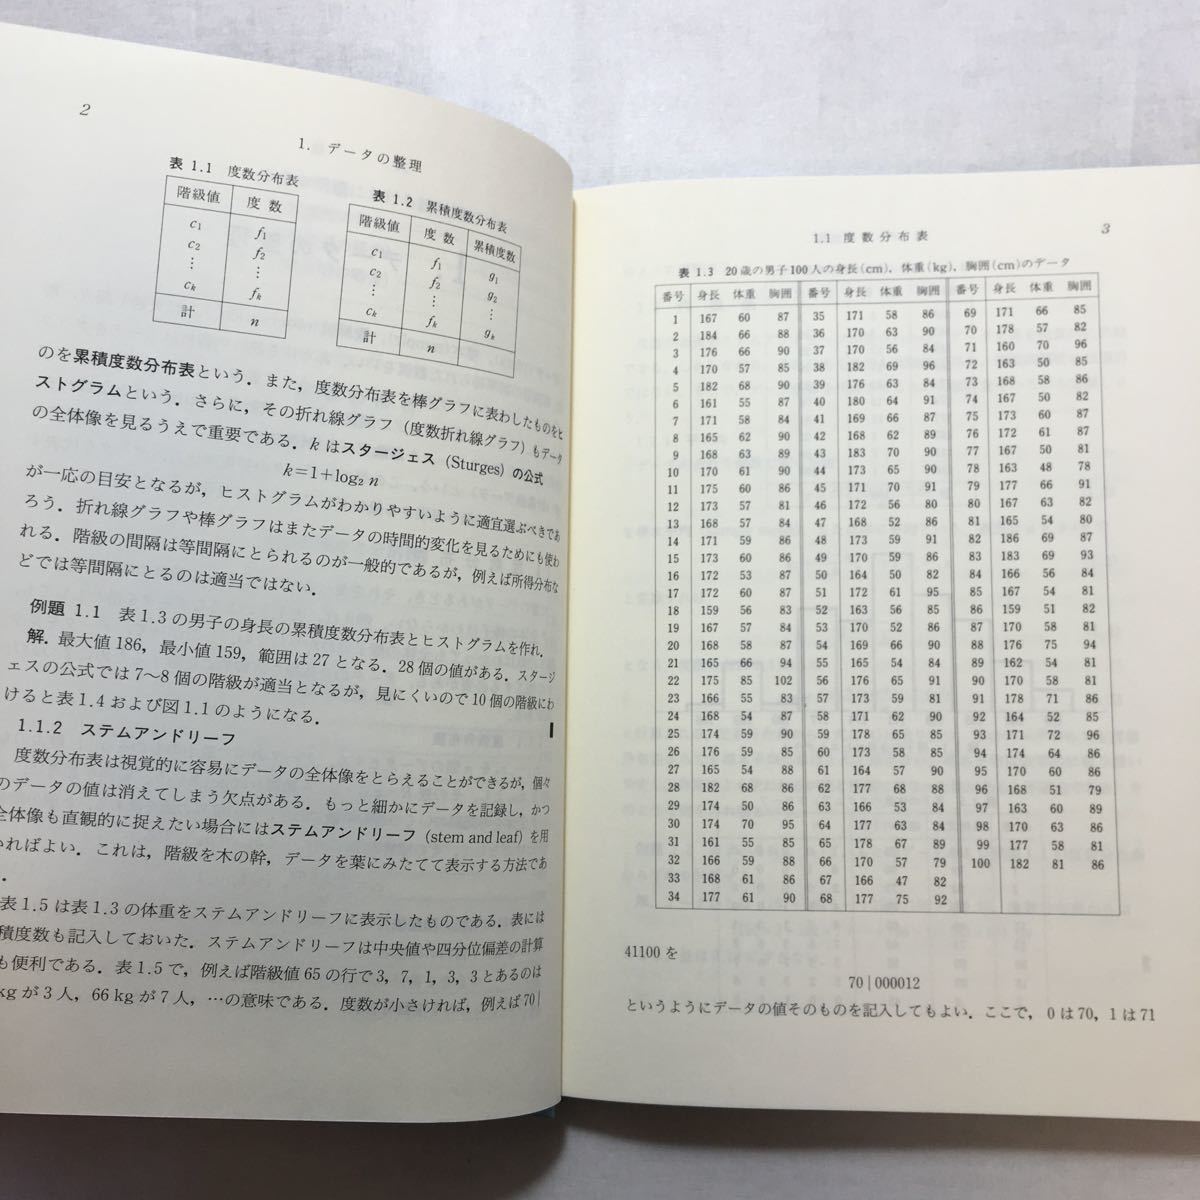 zaa-263♪統計解析入門 単行本 1992/5/1 白旗 慎吾 (著)　共立出版